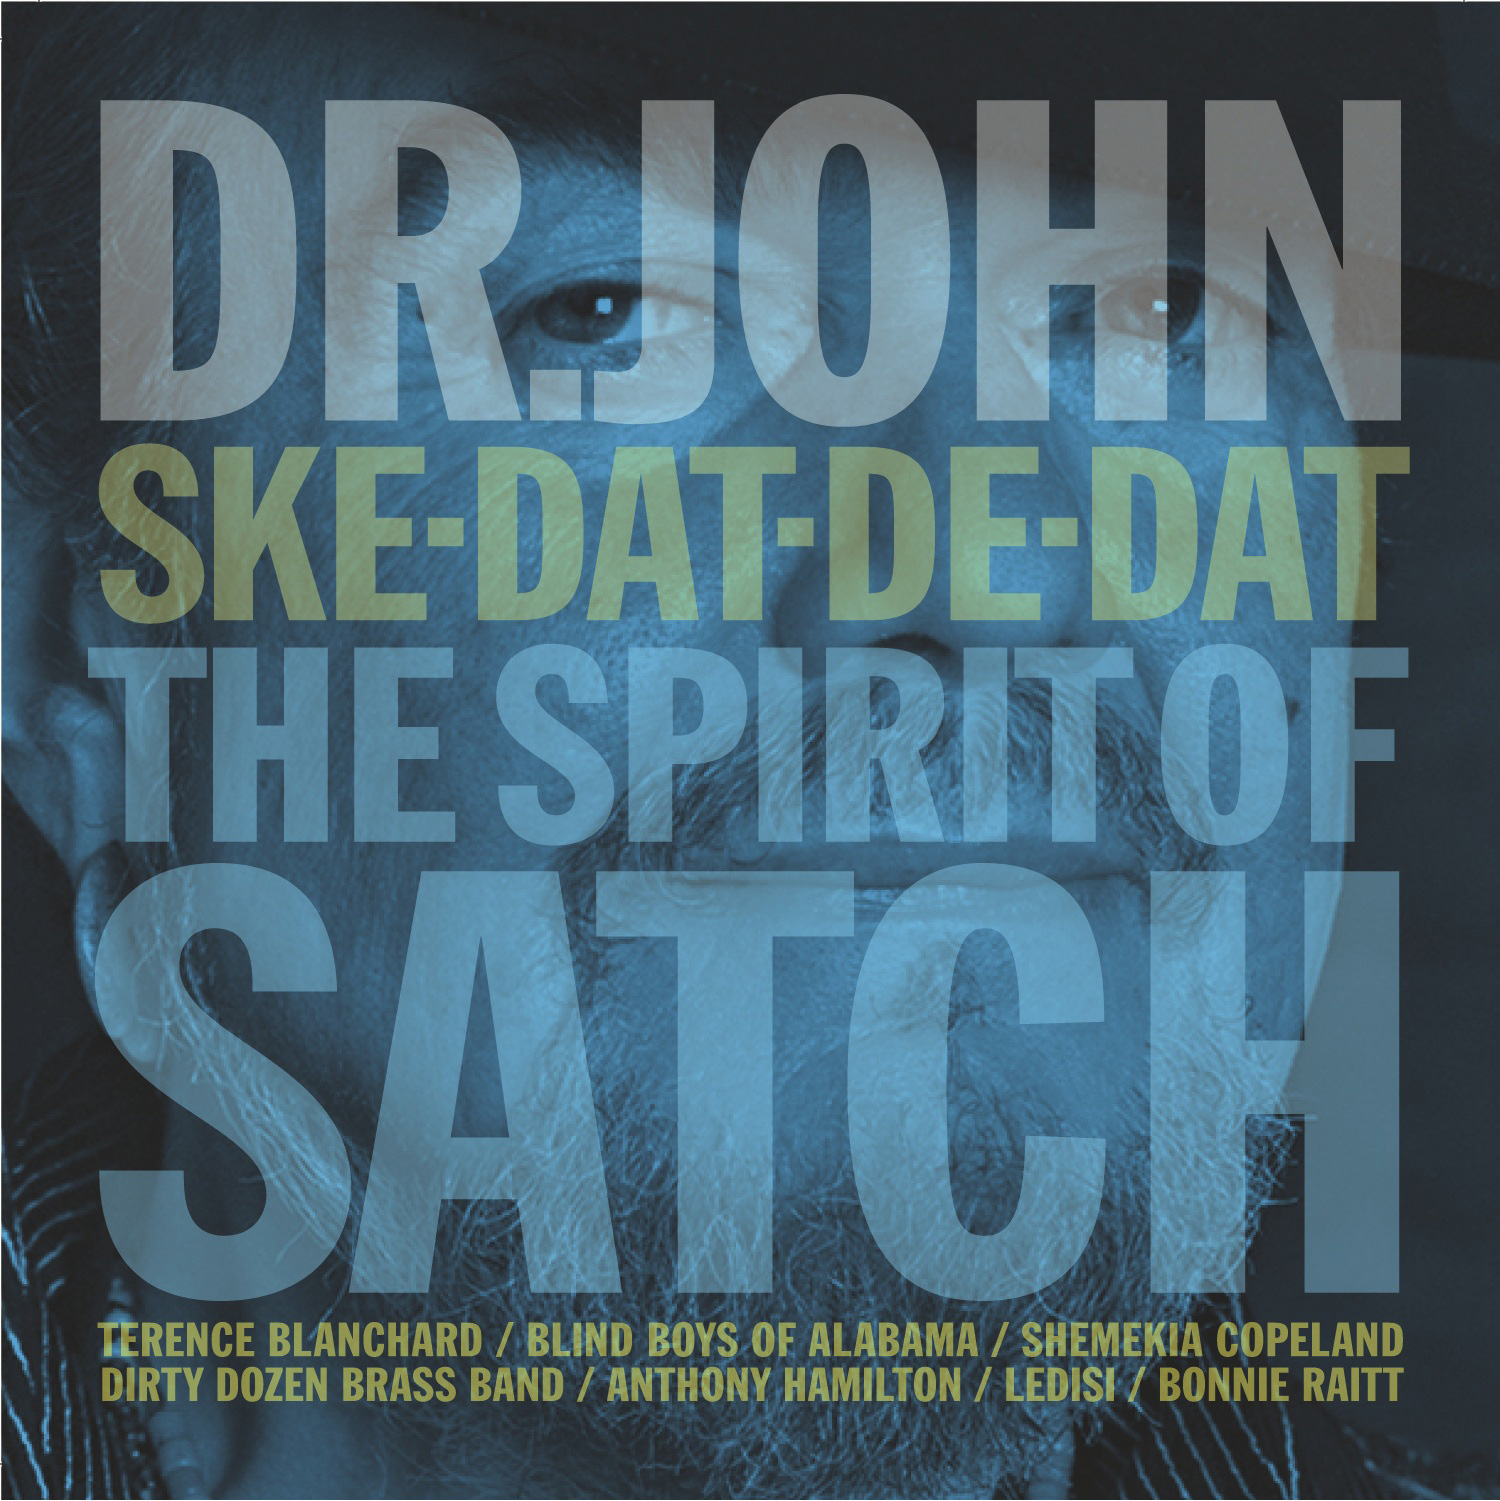 "Ske-Dat-De-Dat: The Spirit of Satch"